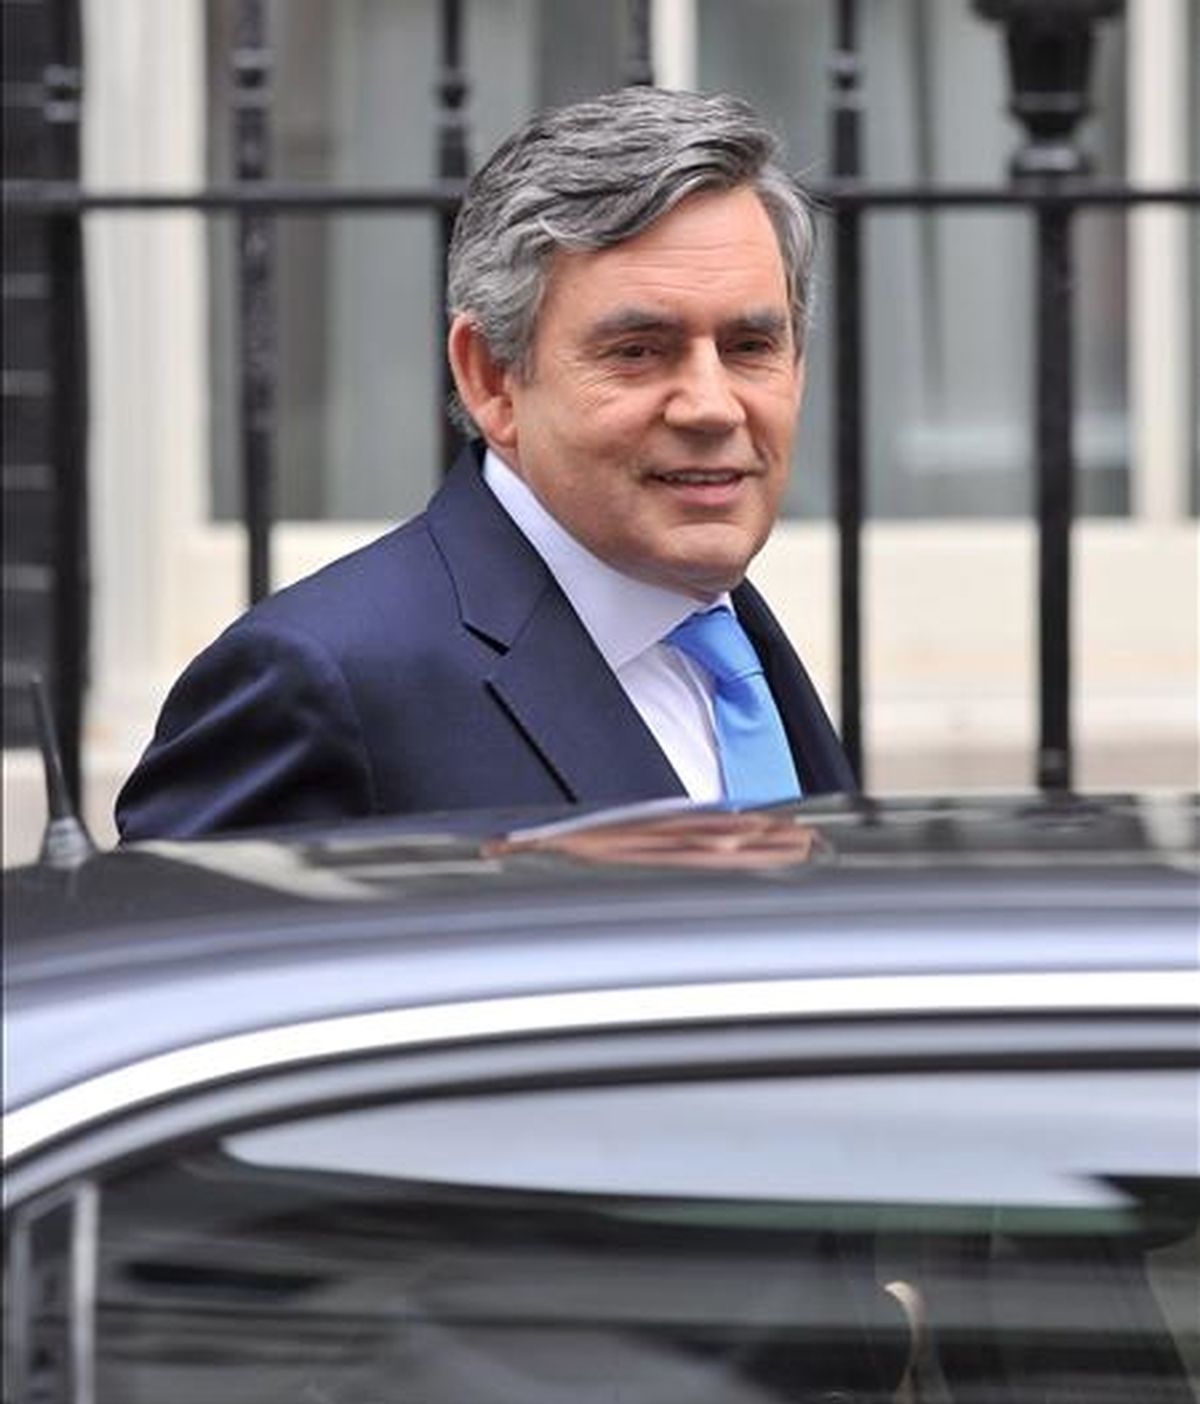 El primer ministro británico, Gordon Brown, abandona su residencia londinense en el número 10 de Downing Street hoy miércoles. EFE